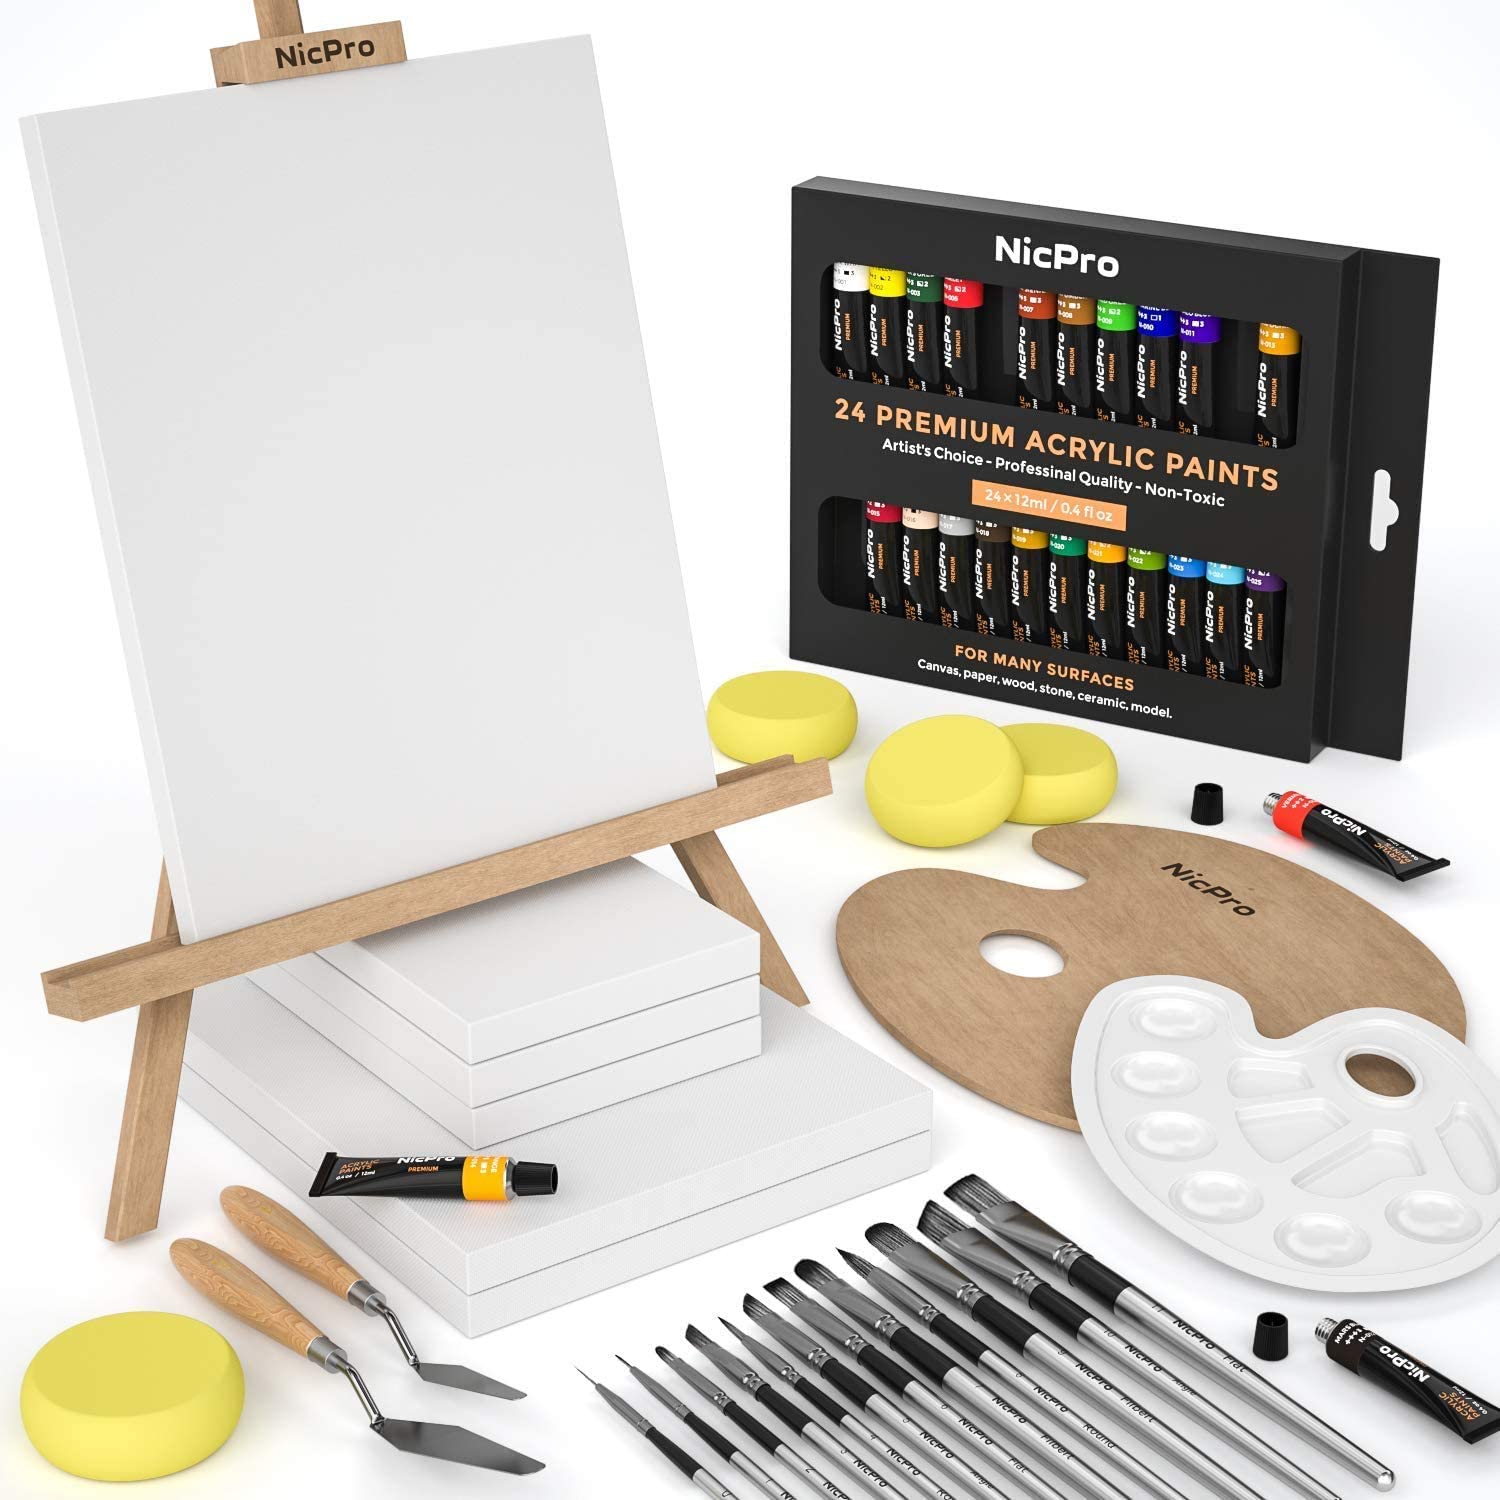  KEFF Creations - Juego de pinceles de pintura acrílica, kit de  15 pinceles de artista premium, juego de 24 pinturas acrílicas, kit de  pinceles para lienzo, madera, tela, gran juego de